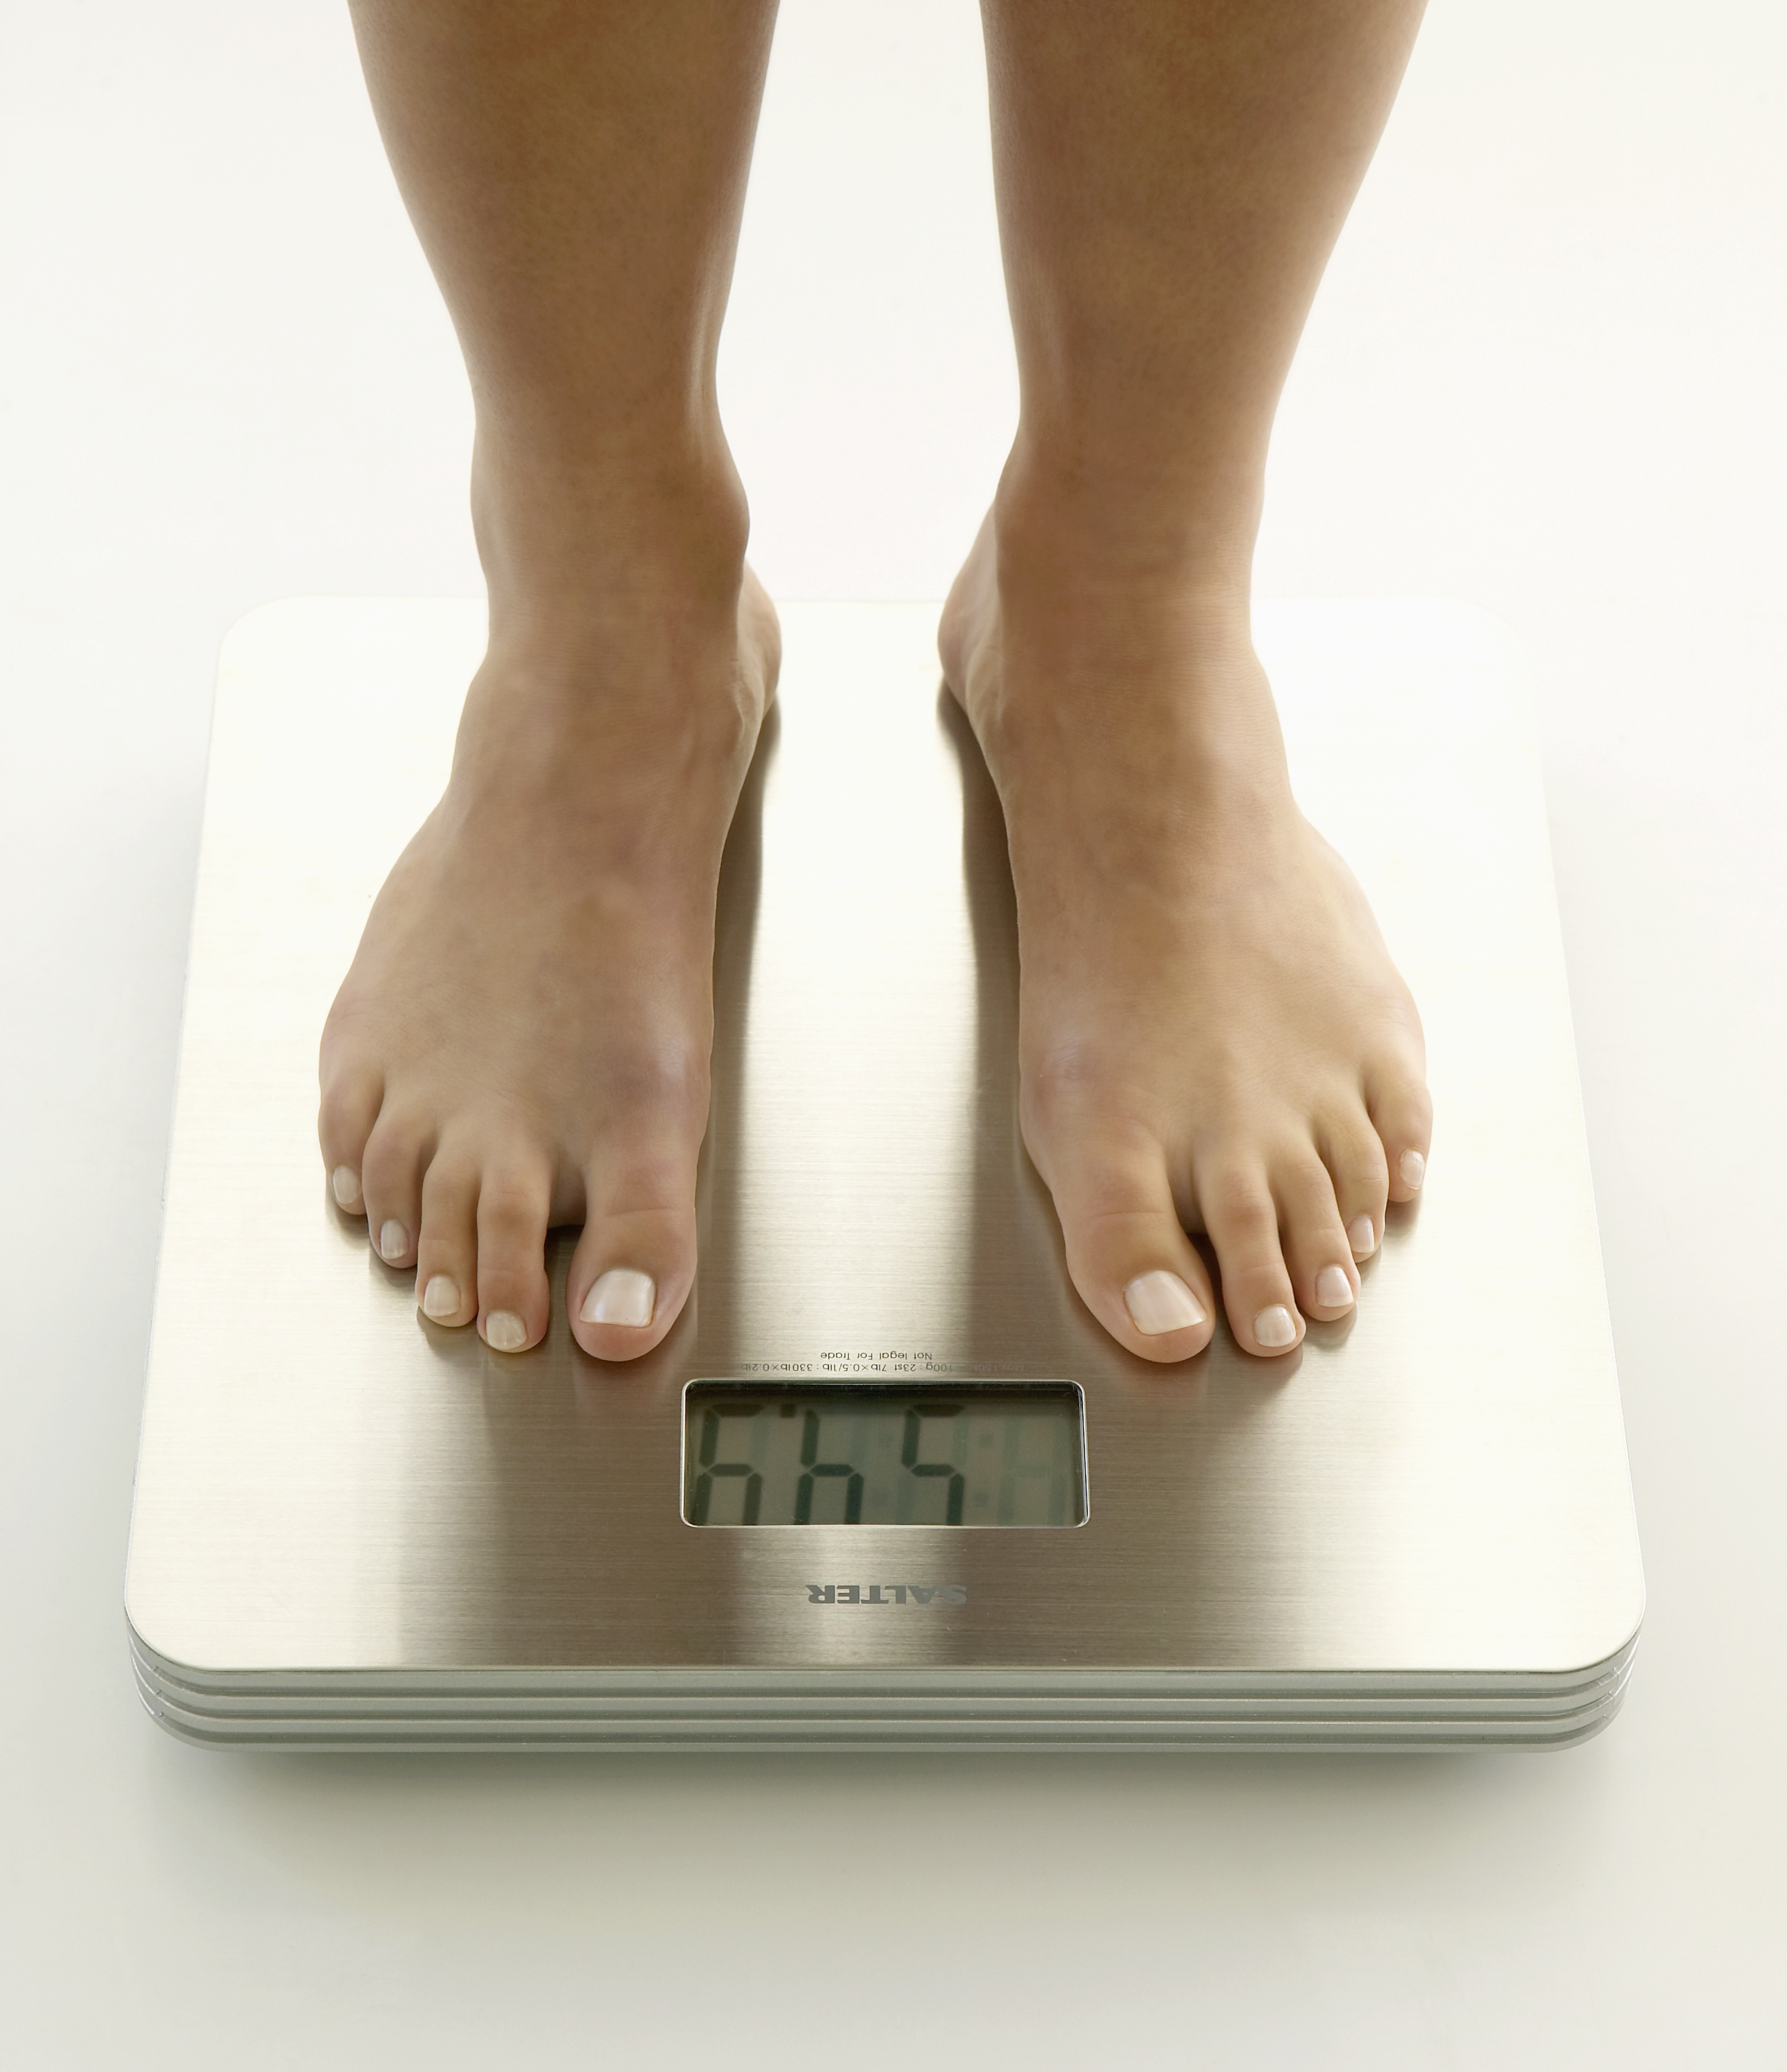 вес стоит как ускорить похудение